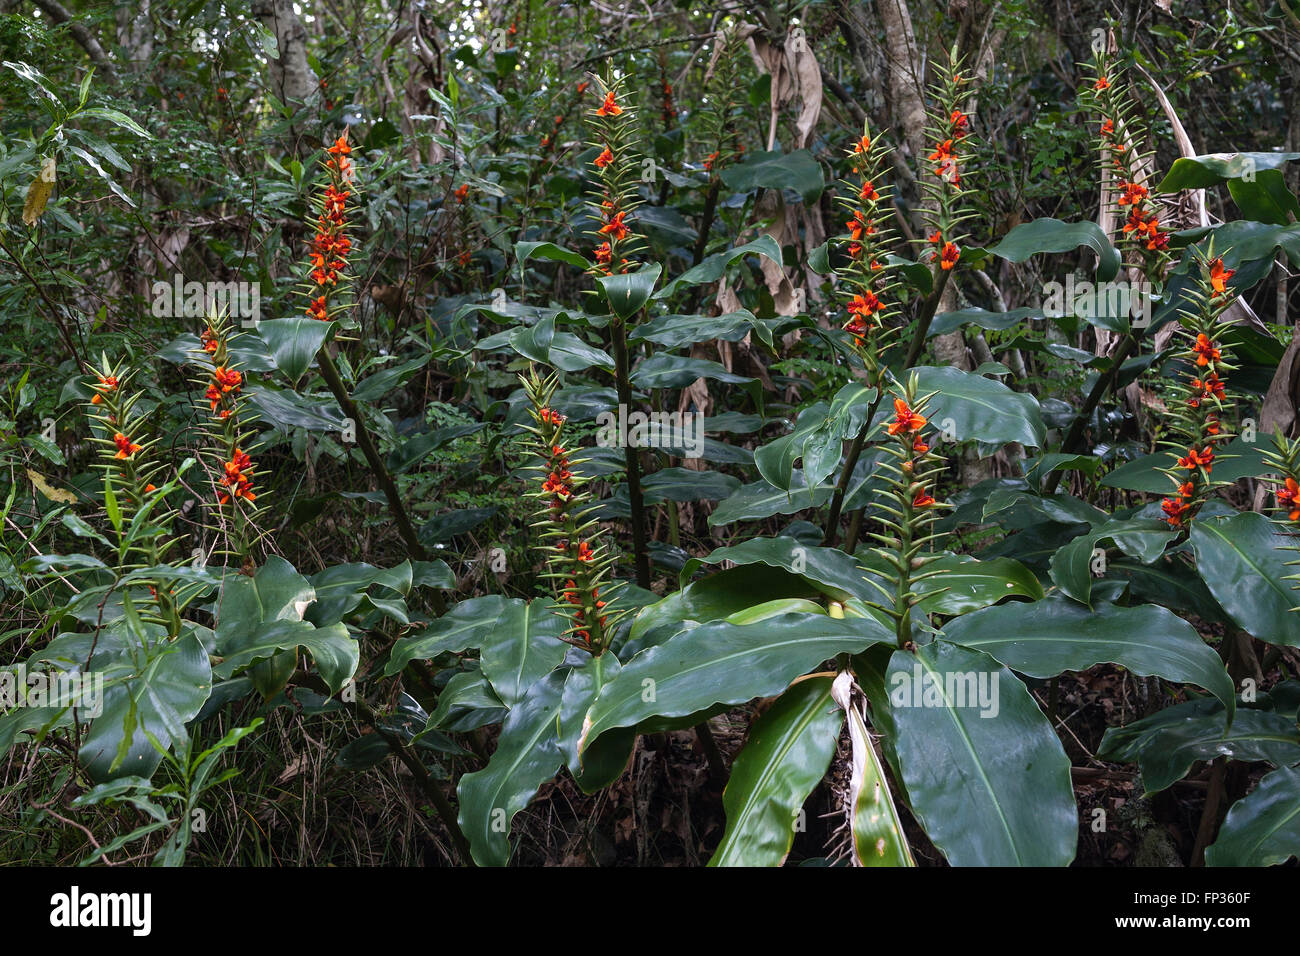 Fruit stand of Kahili ginger (Hedychium gardnerianum), Rainforest of the Cirque de Cilaos, La Reunion Stock Photo